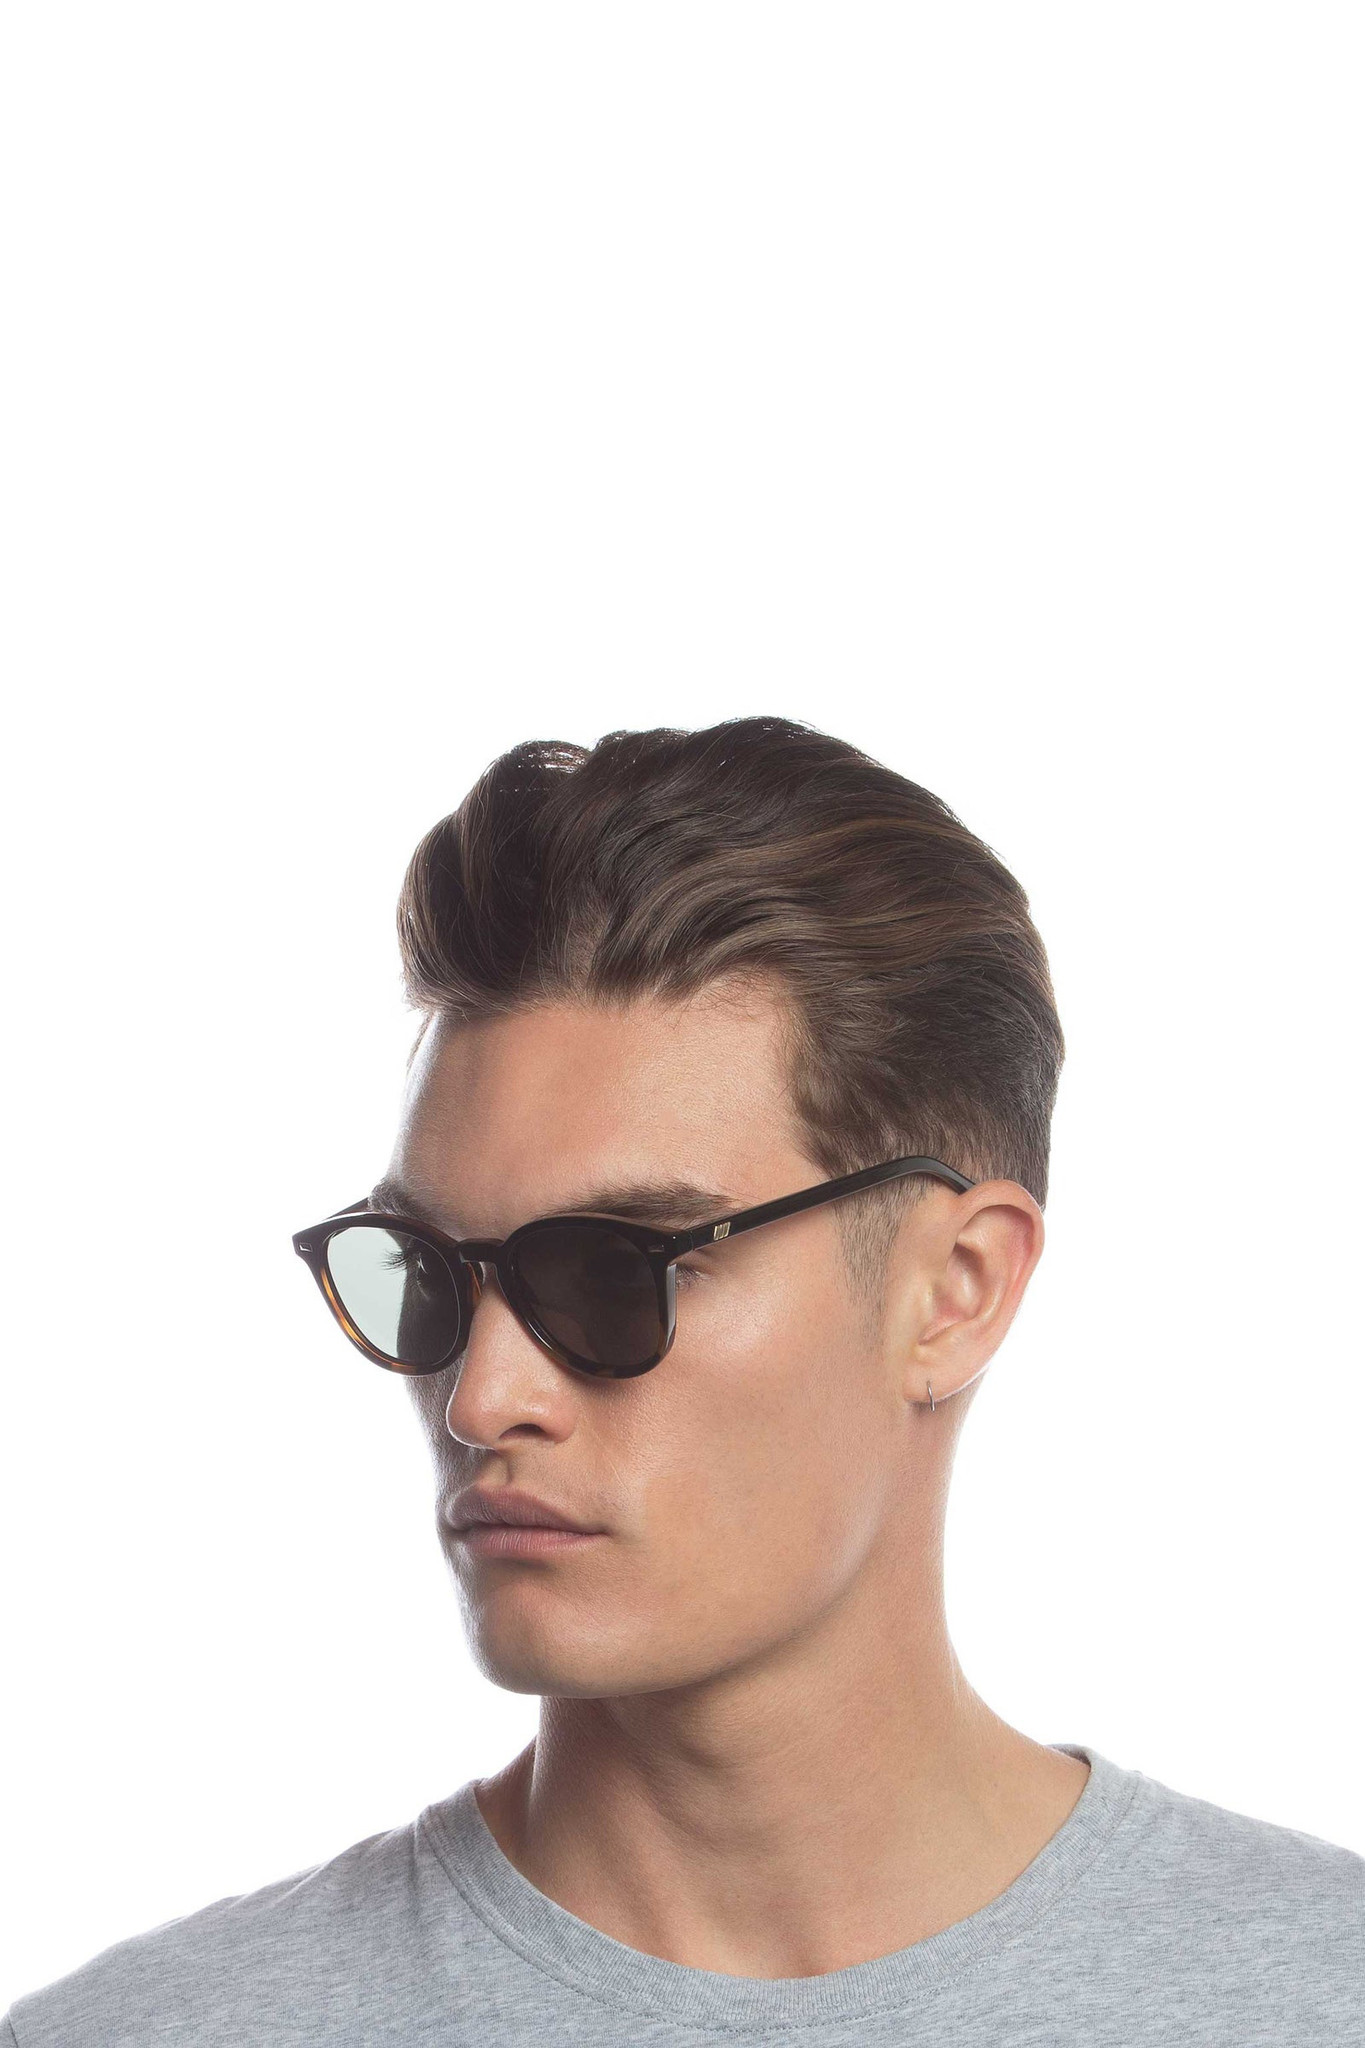 Bandwagon Sunglasses - Black Tortoise Polarized-6